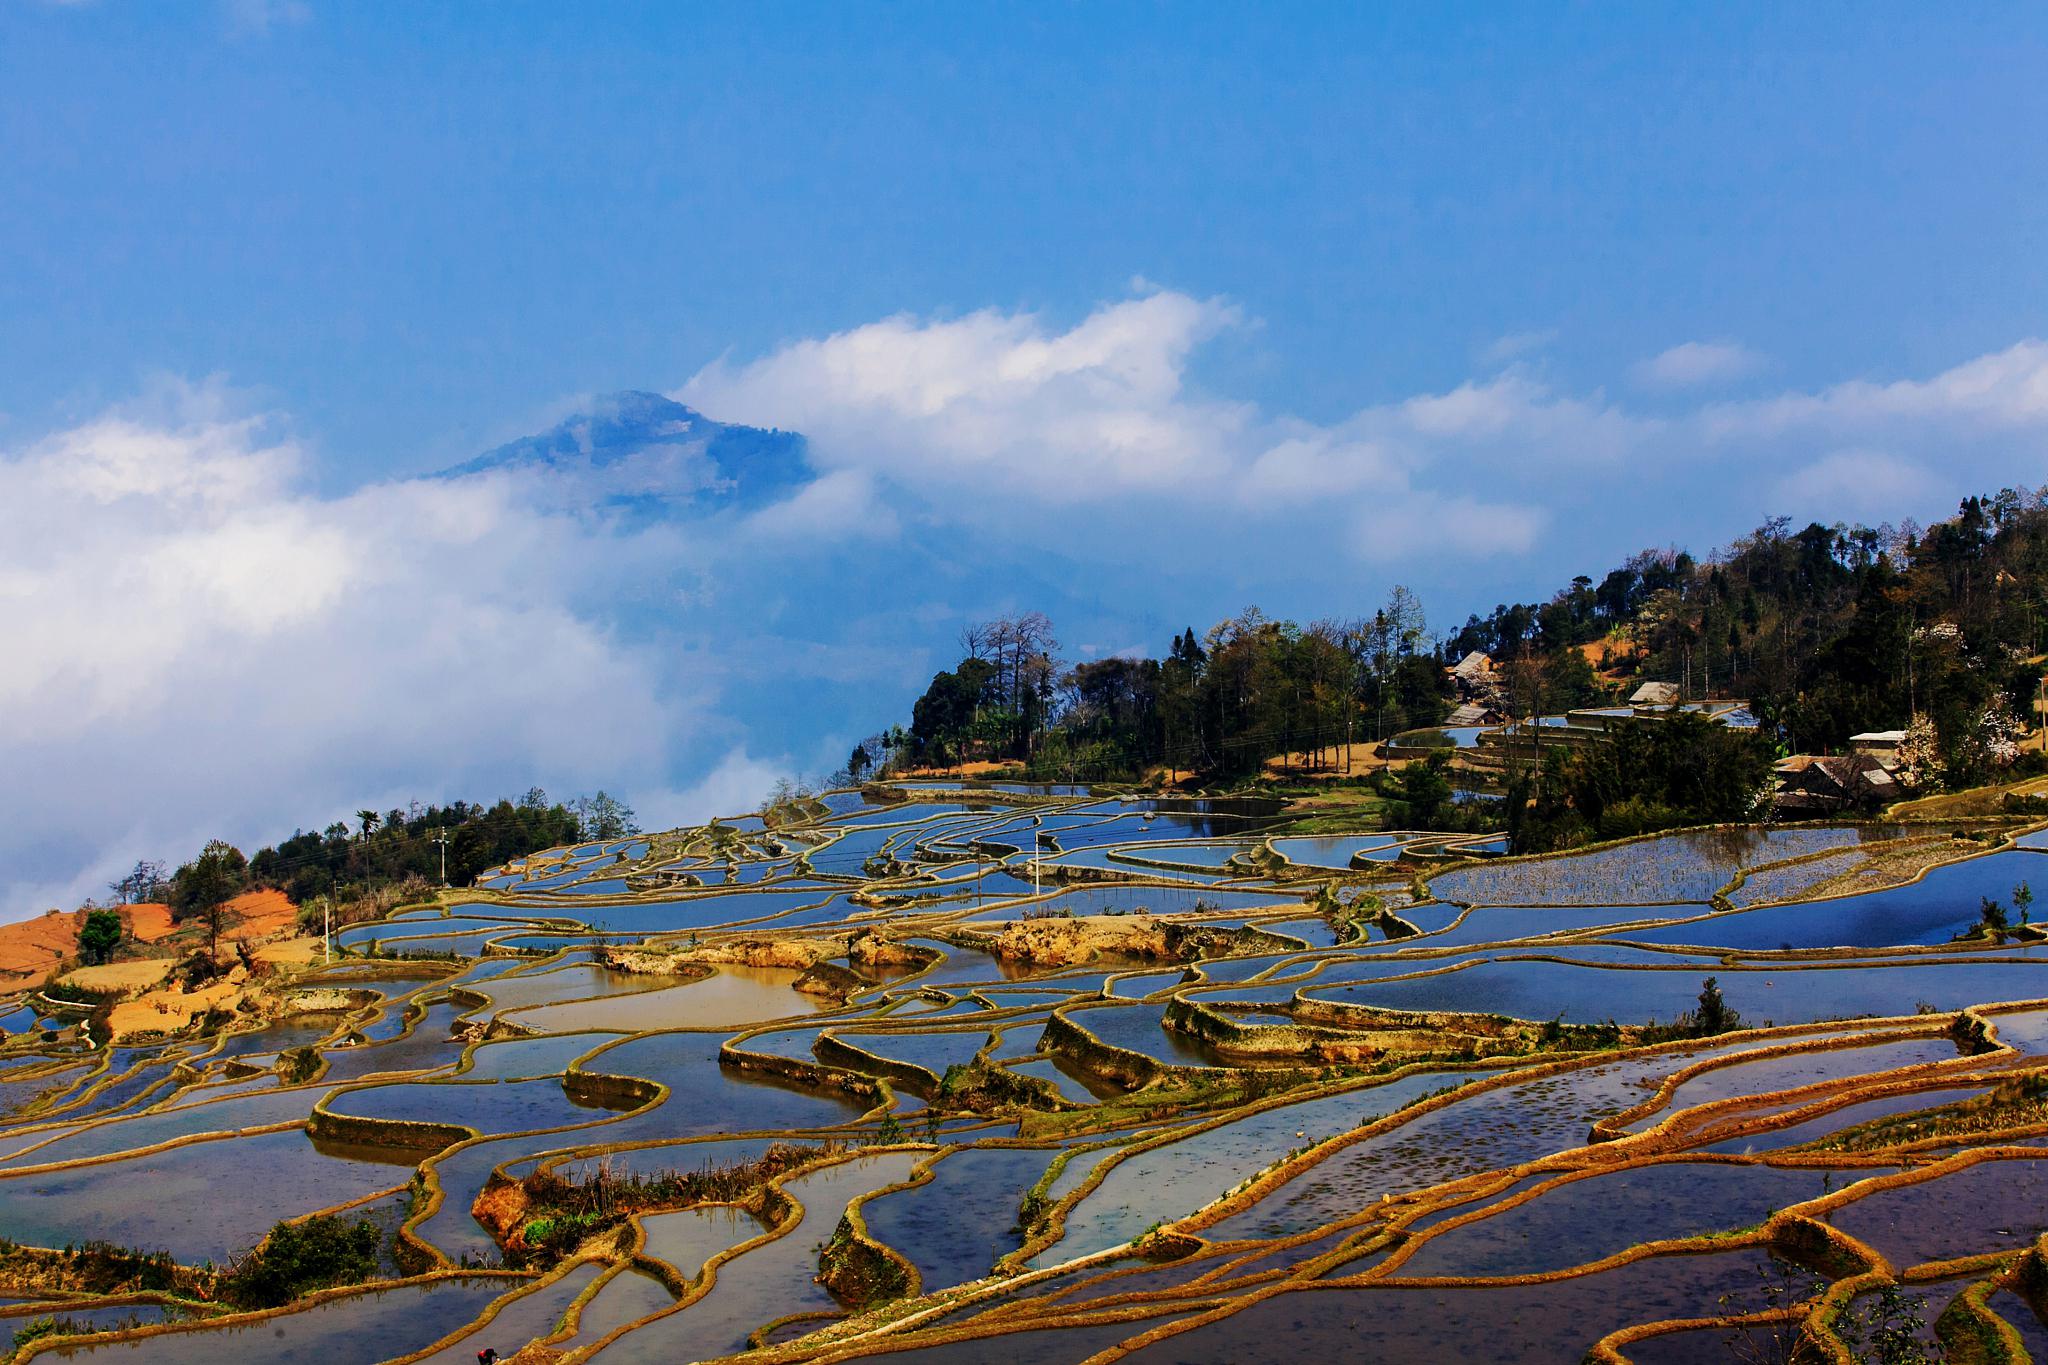 探索腾冲:一次不一样的云南之旅 在云南这个充满异域风情和自然美景的